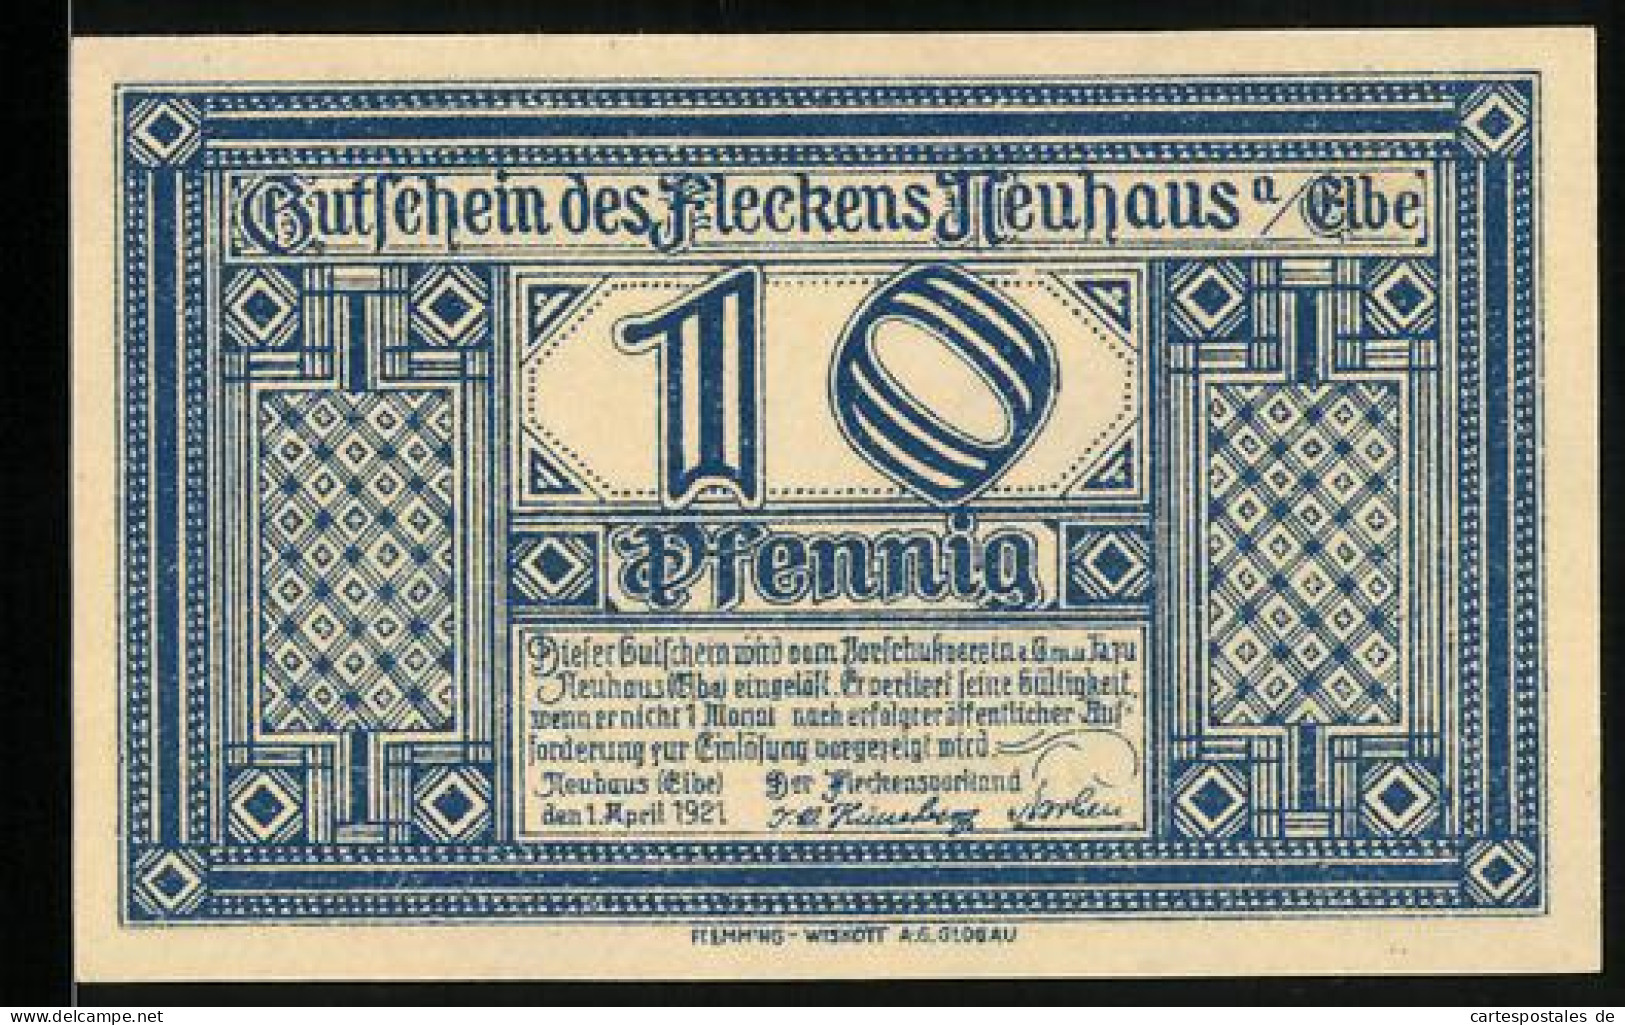 Notgeld Neuhaus A. Elbe 1921, 10 Pfennig, Geburtshaus Des Afrikaforschers Dr. Karl Peters  - [11] Emissions Locales